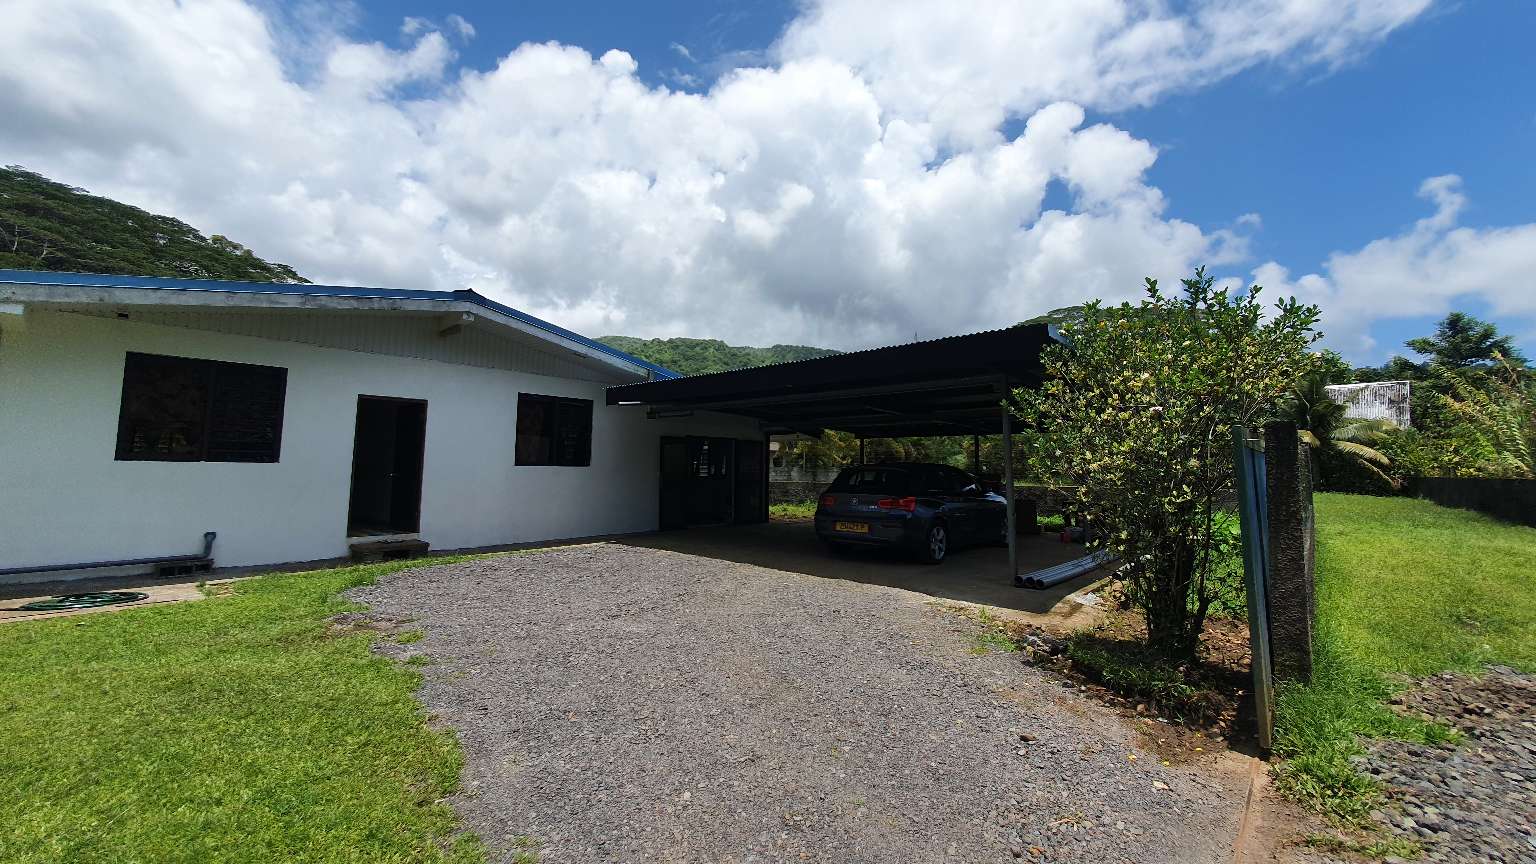 Location tahiti maison loiet